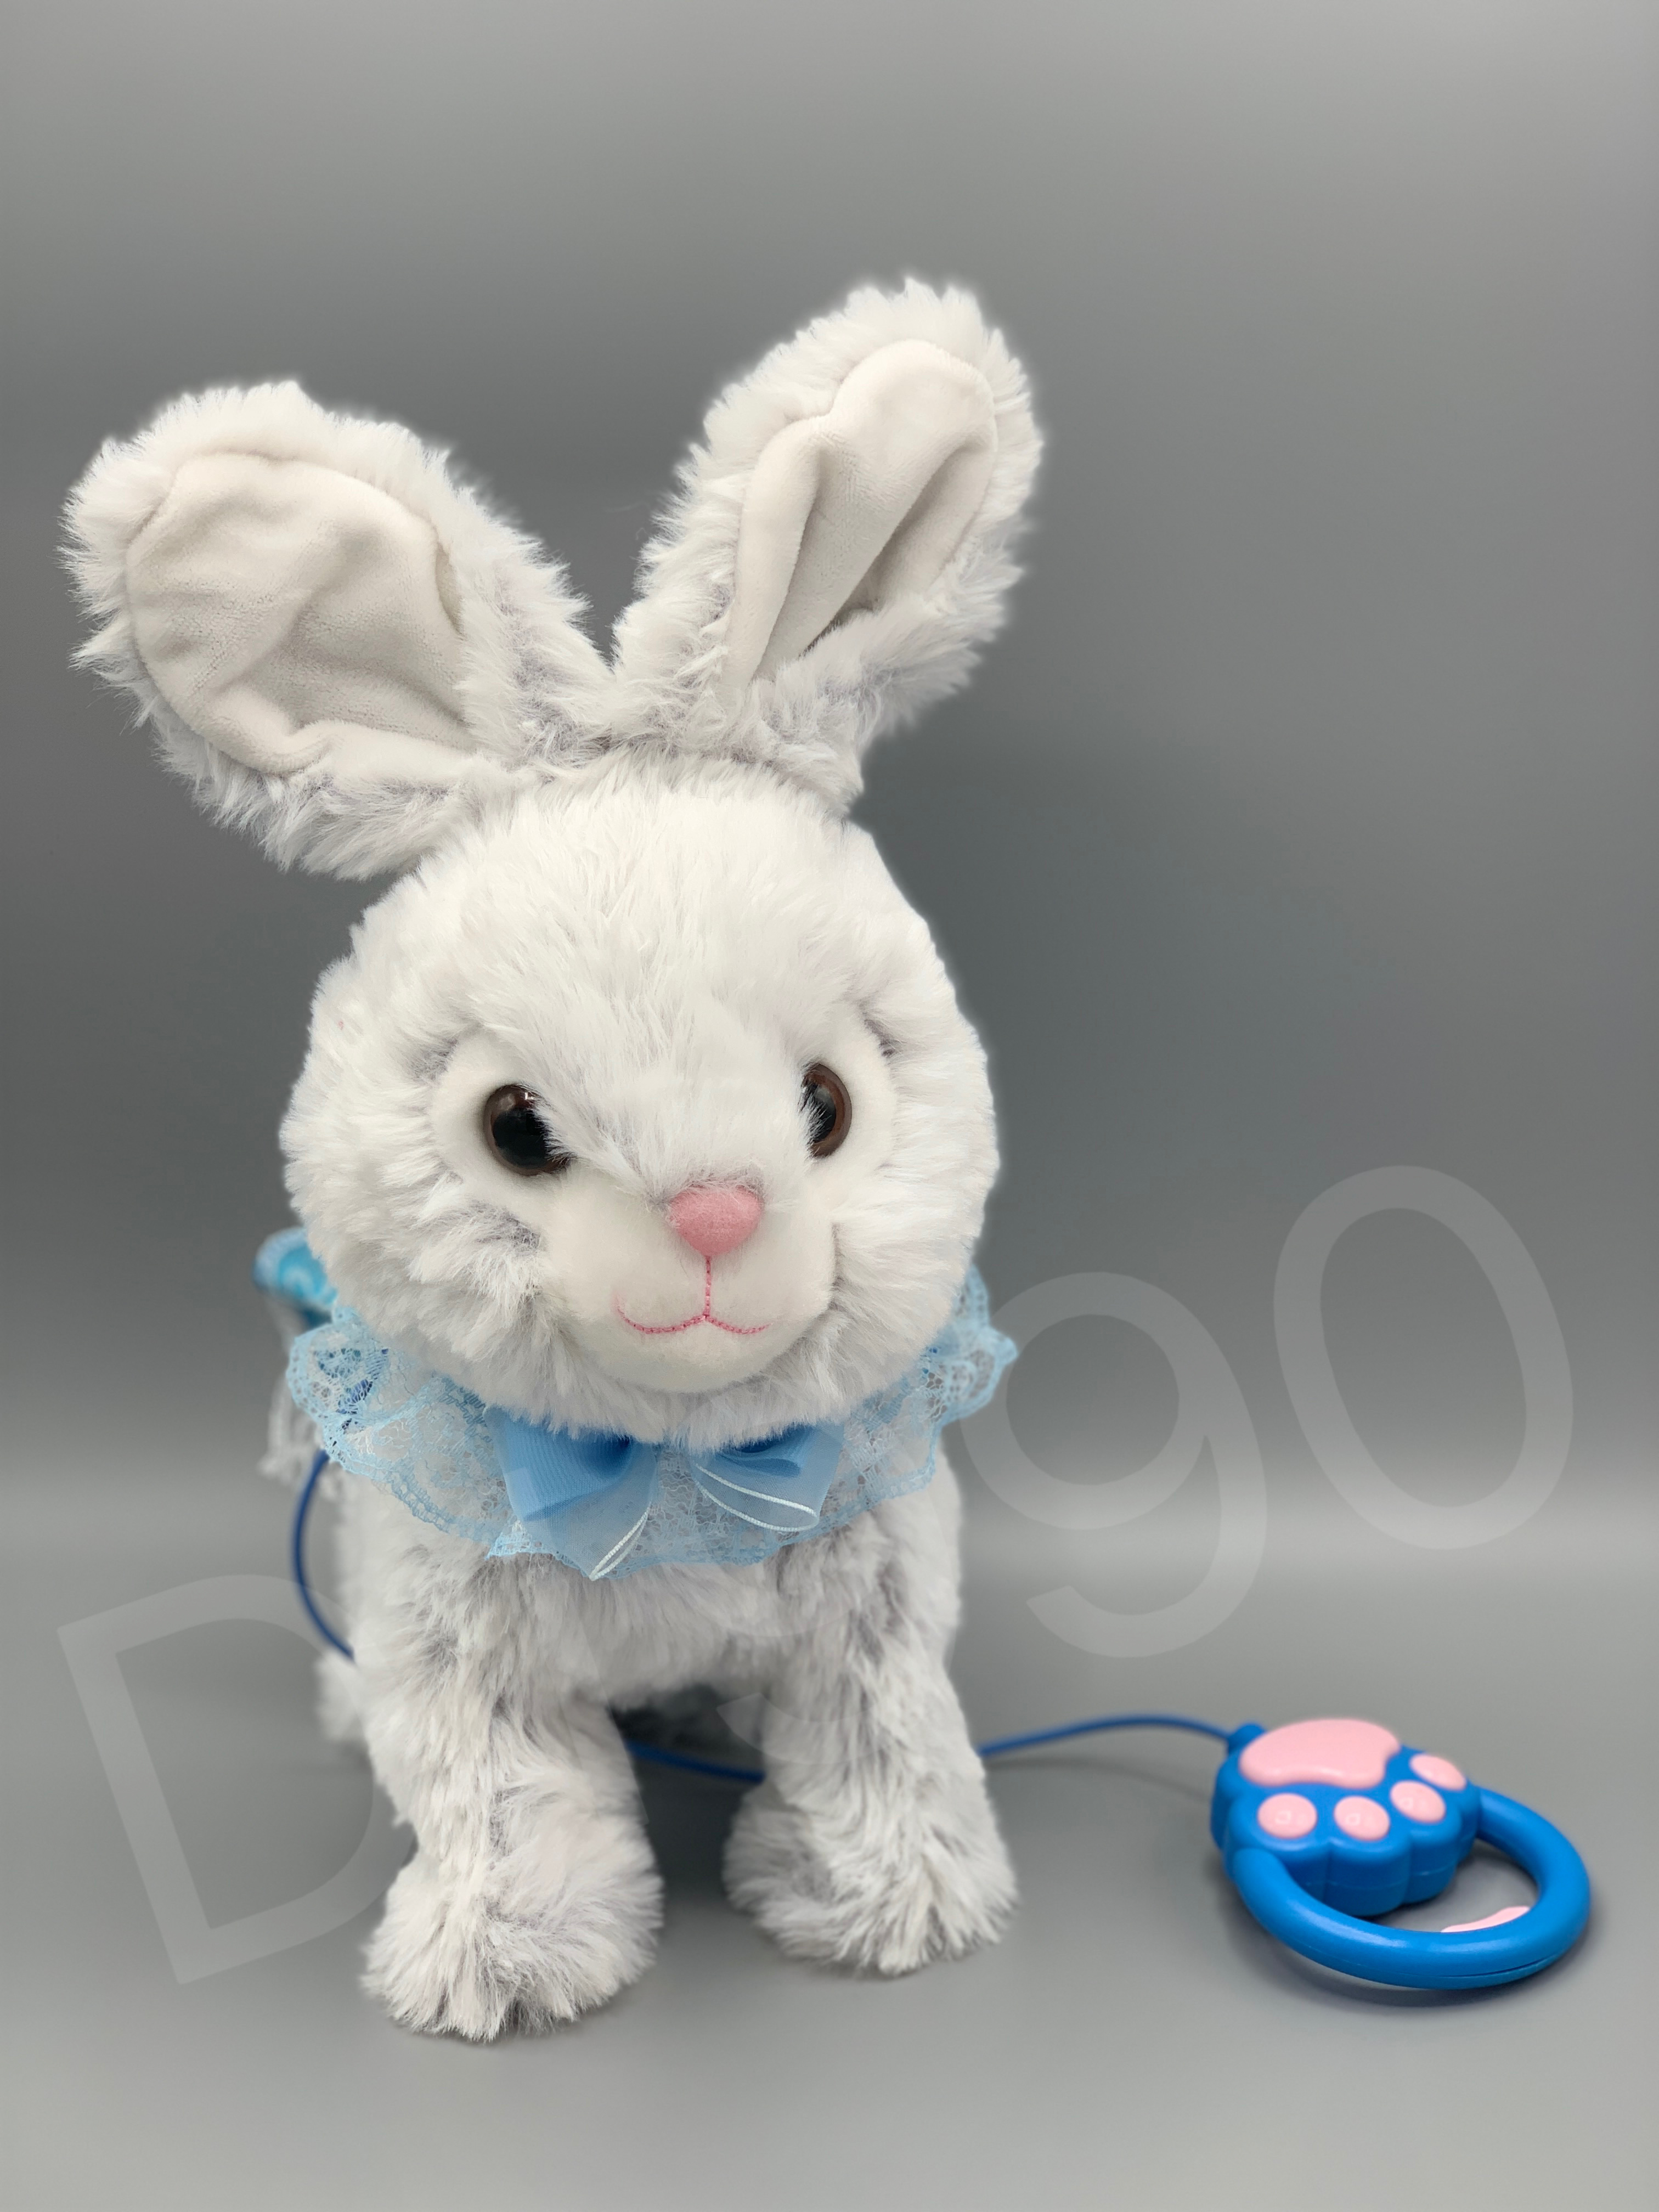 毛绒电动玩具兔子会蹦会走会唱歌能录音的玩具公仔兔子图